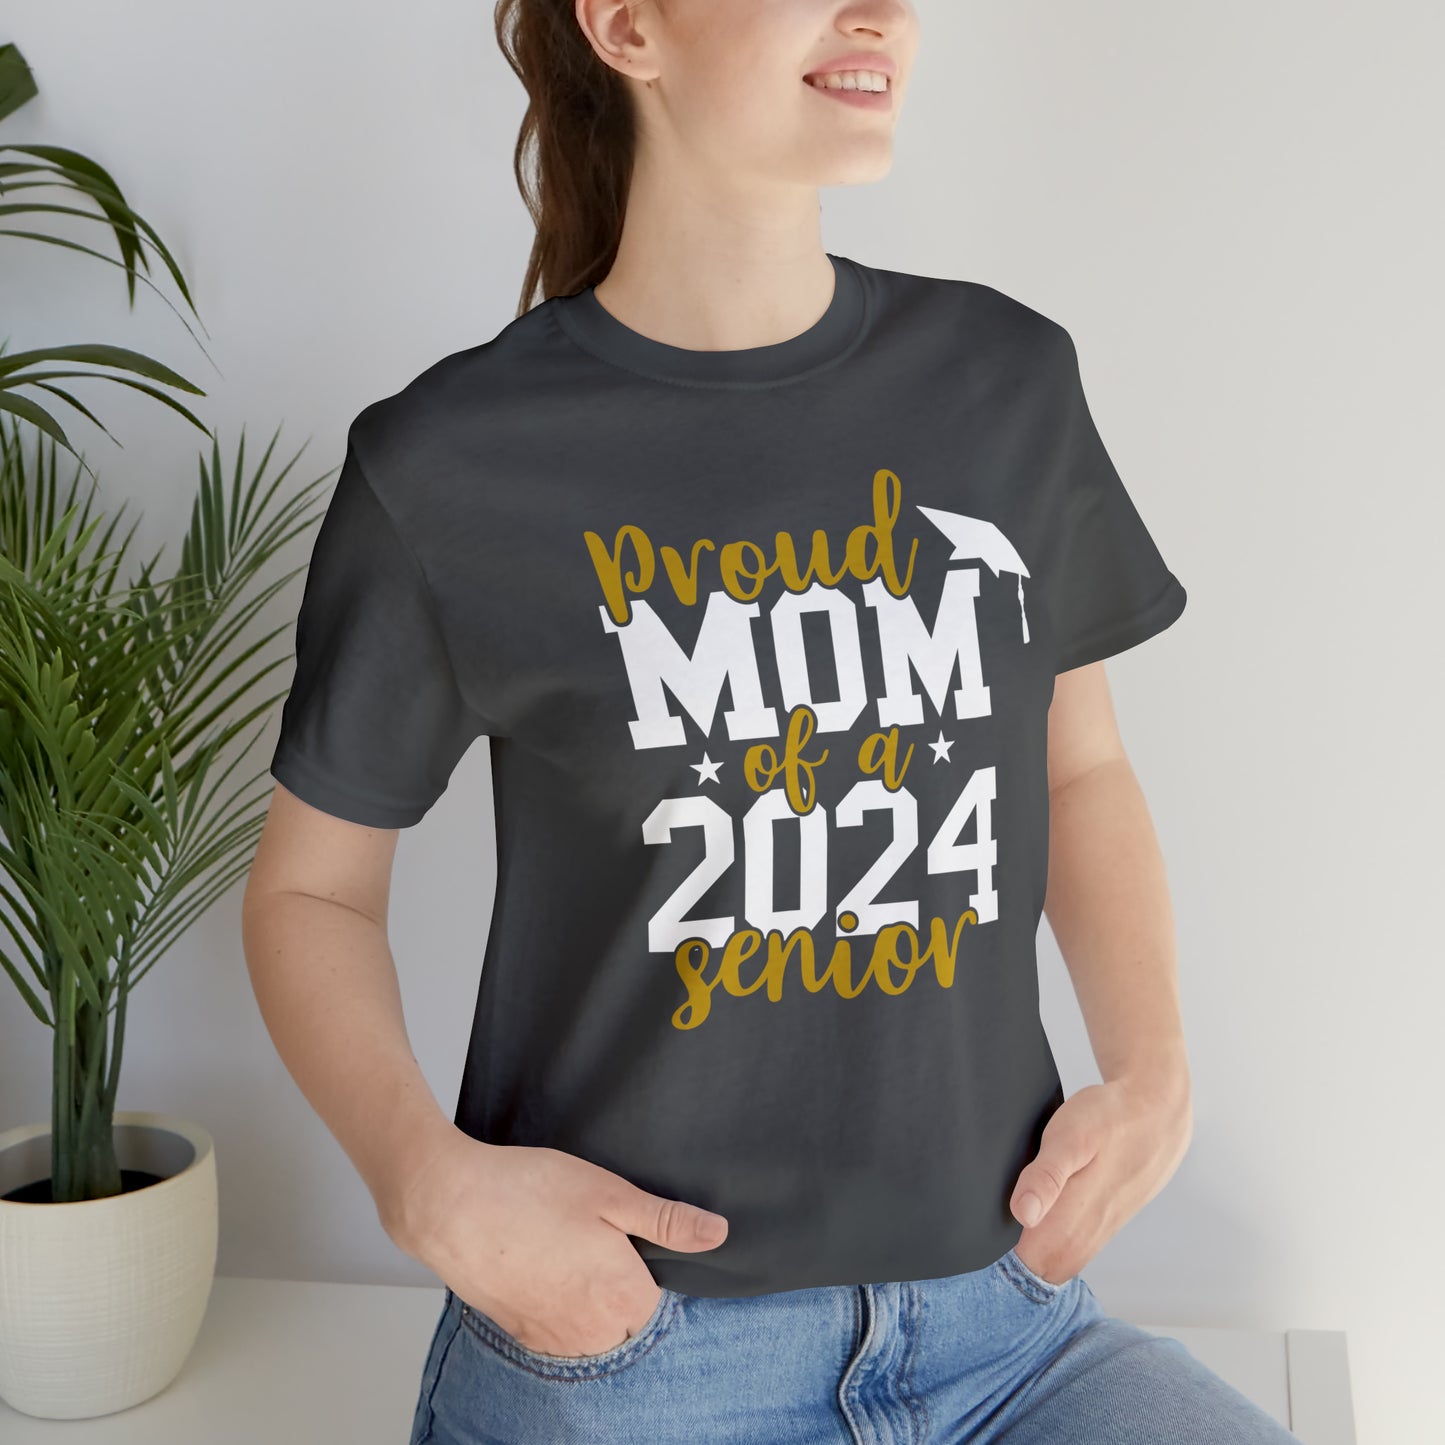 2024 Mom Tee - Bella Canvas